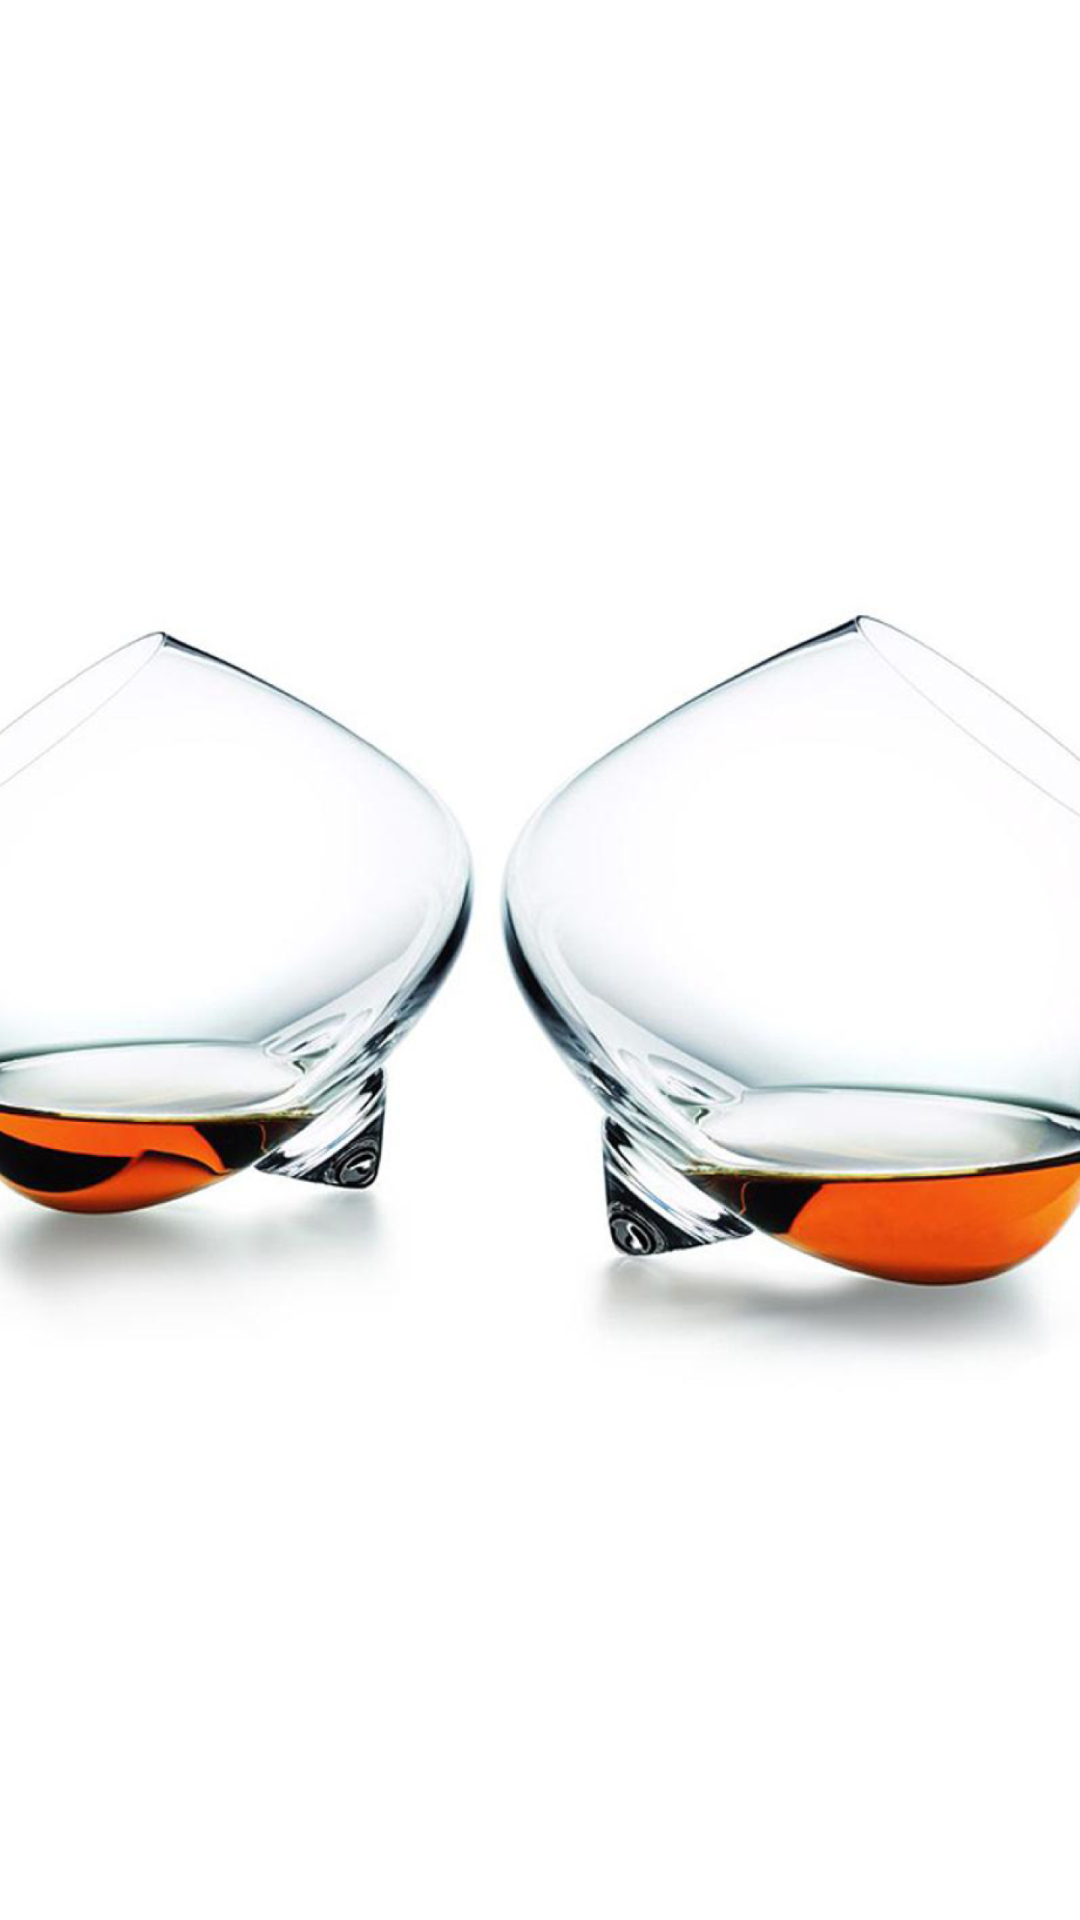 Cognac Glasses wallpaper 1080x1920